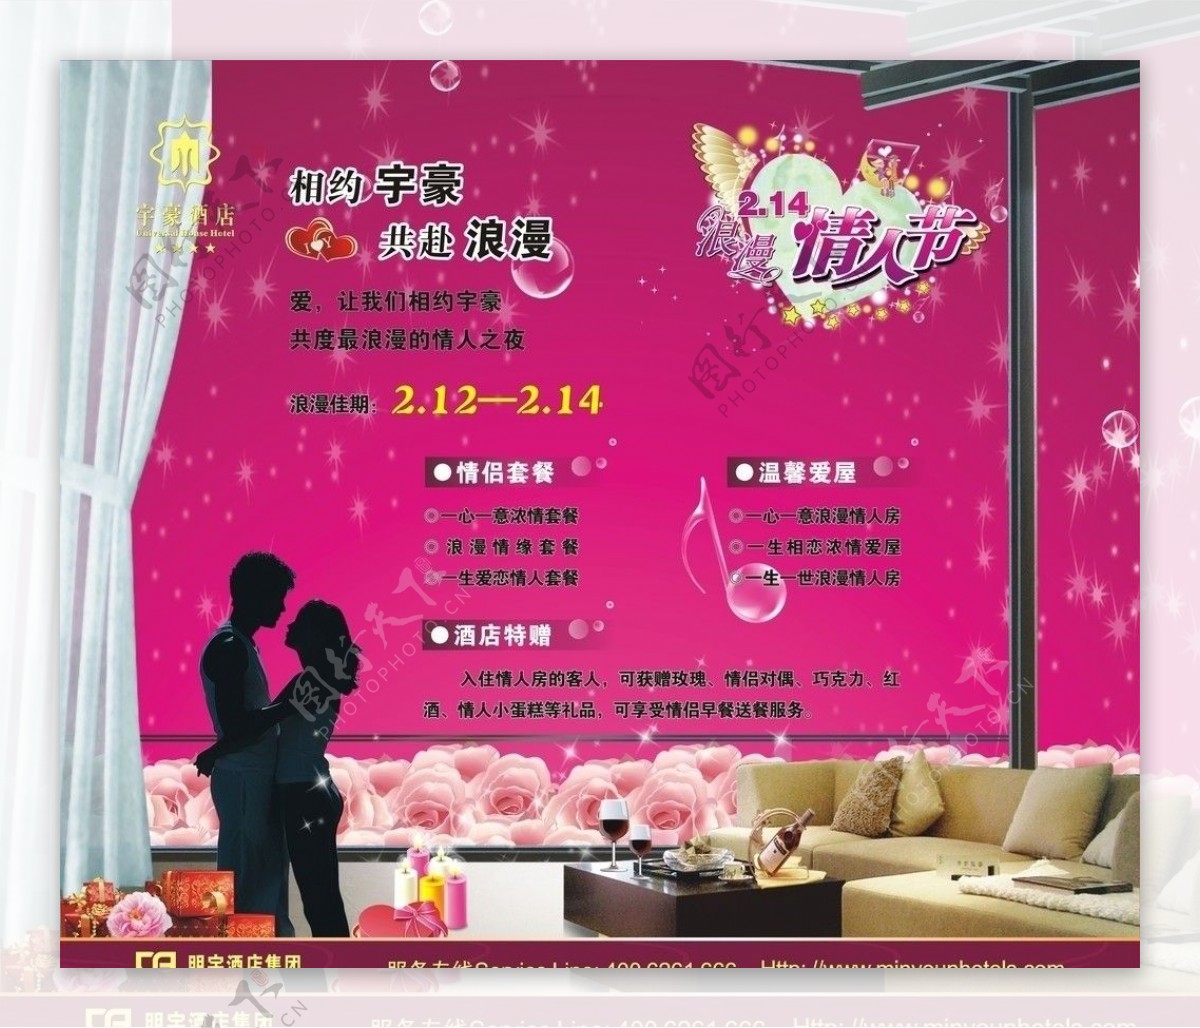 宇豪酒店2011年情人节宣传广告图片